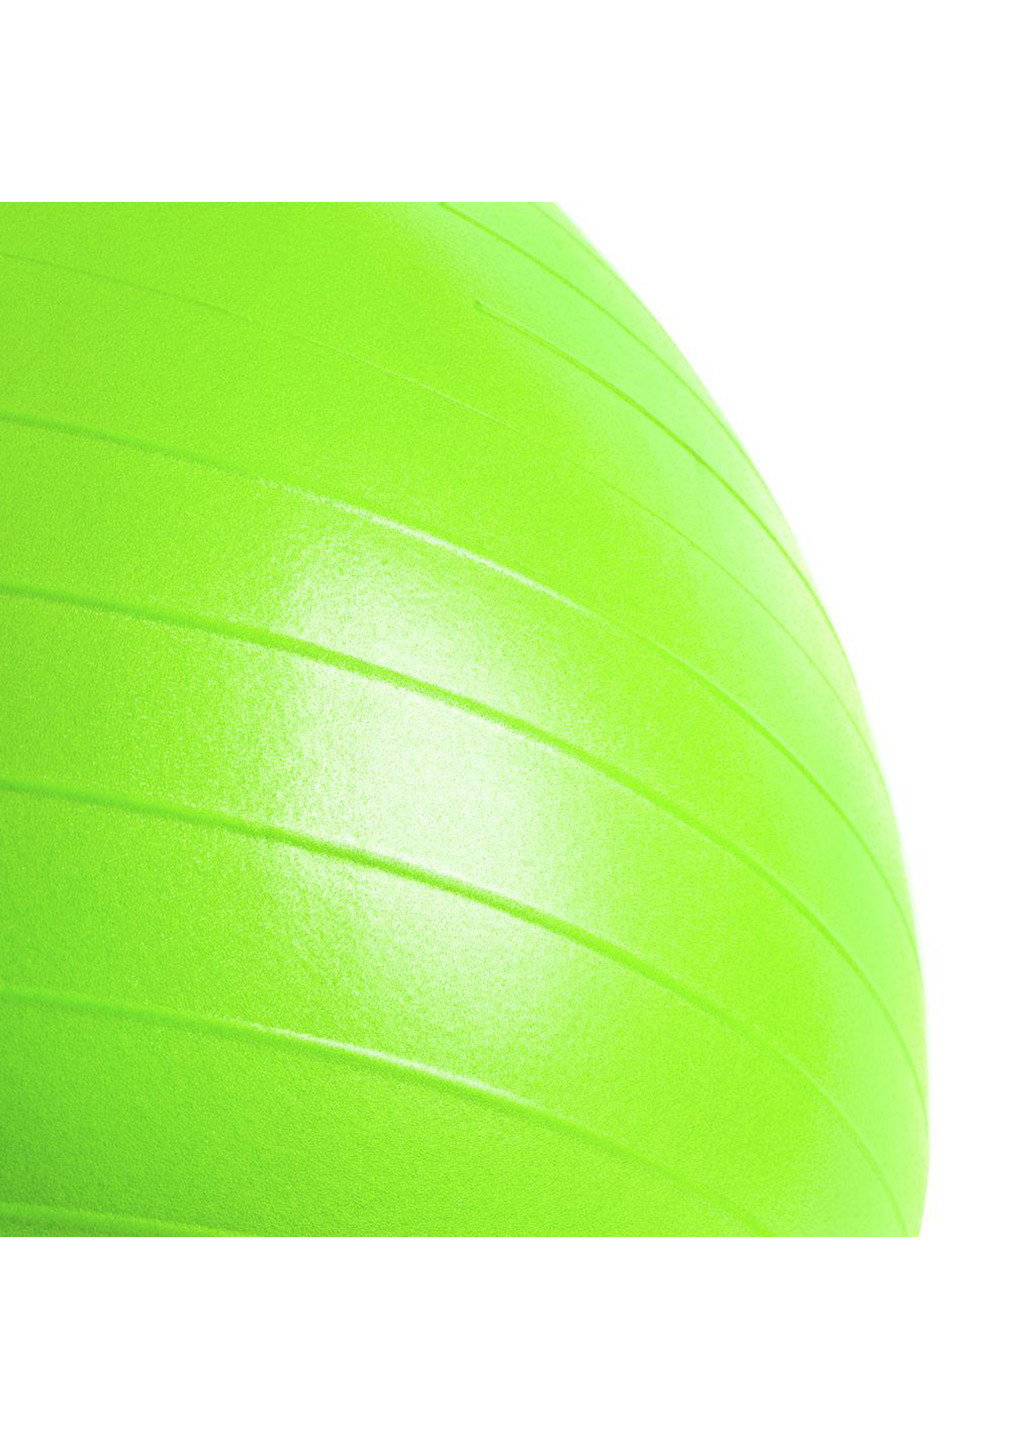 Гімнастичний м'яч 65 см Spokey (224999459)